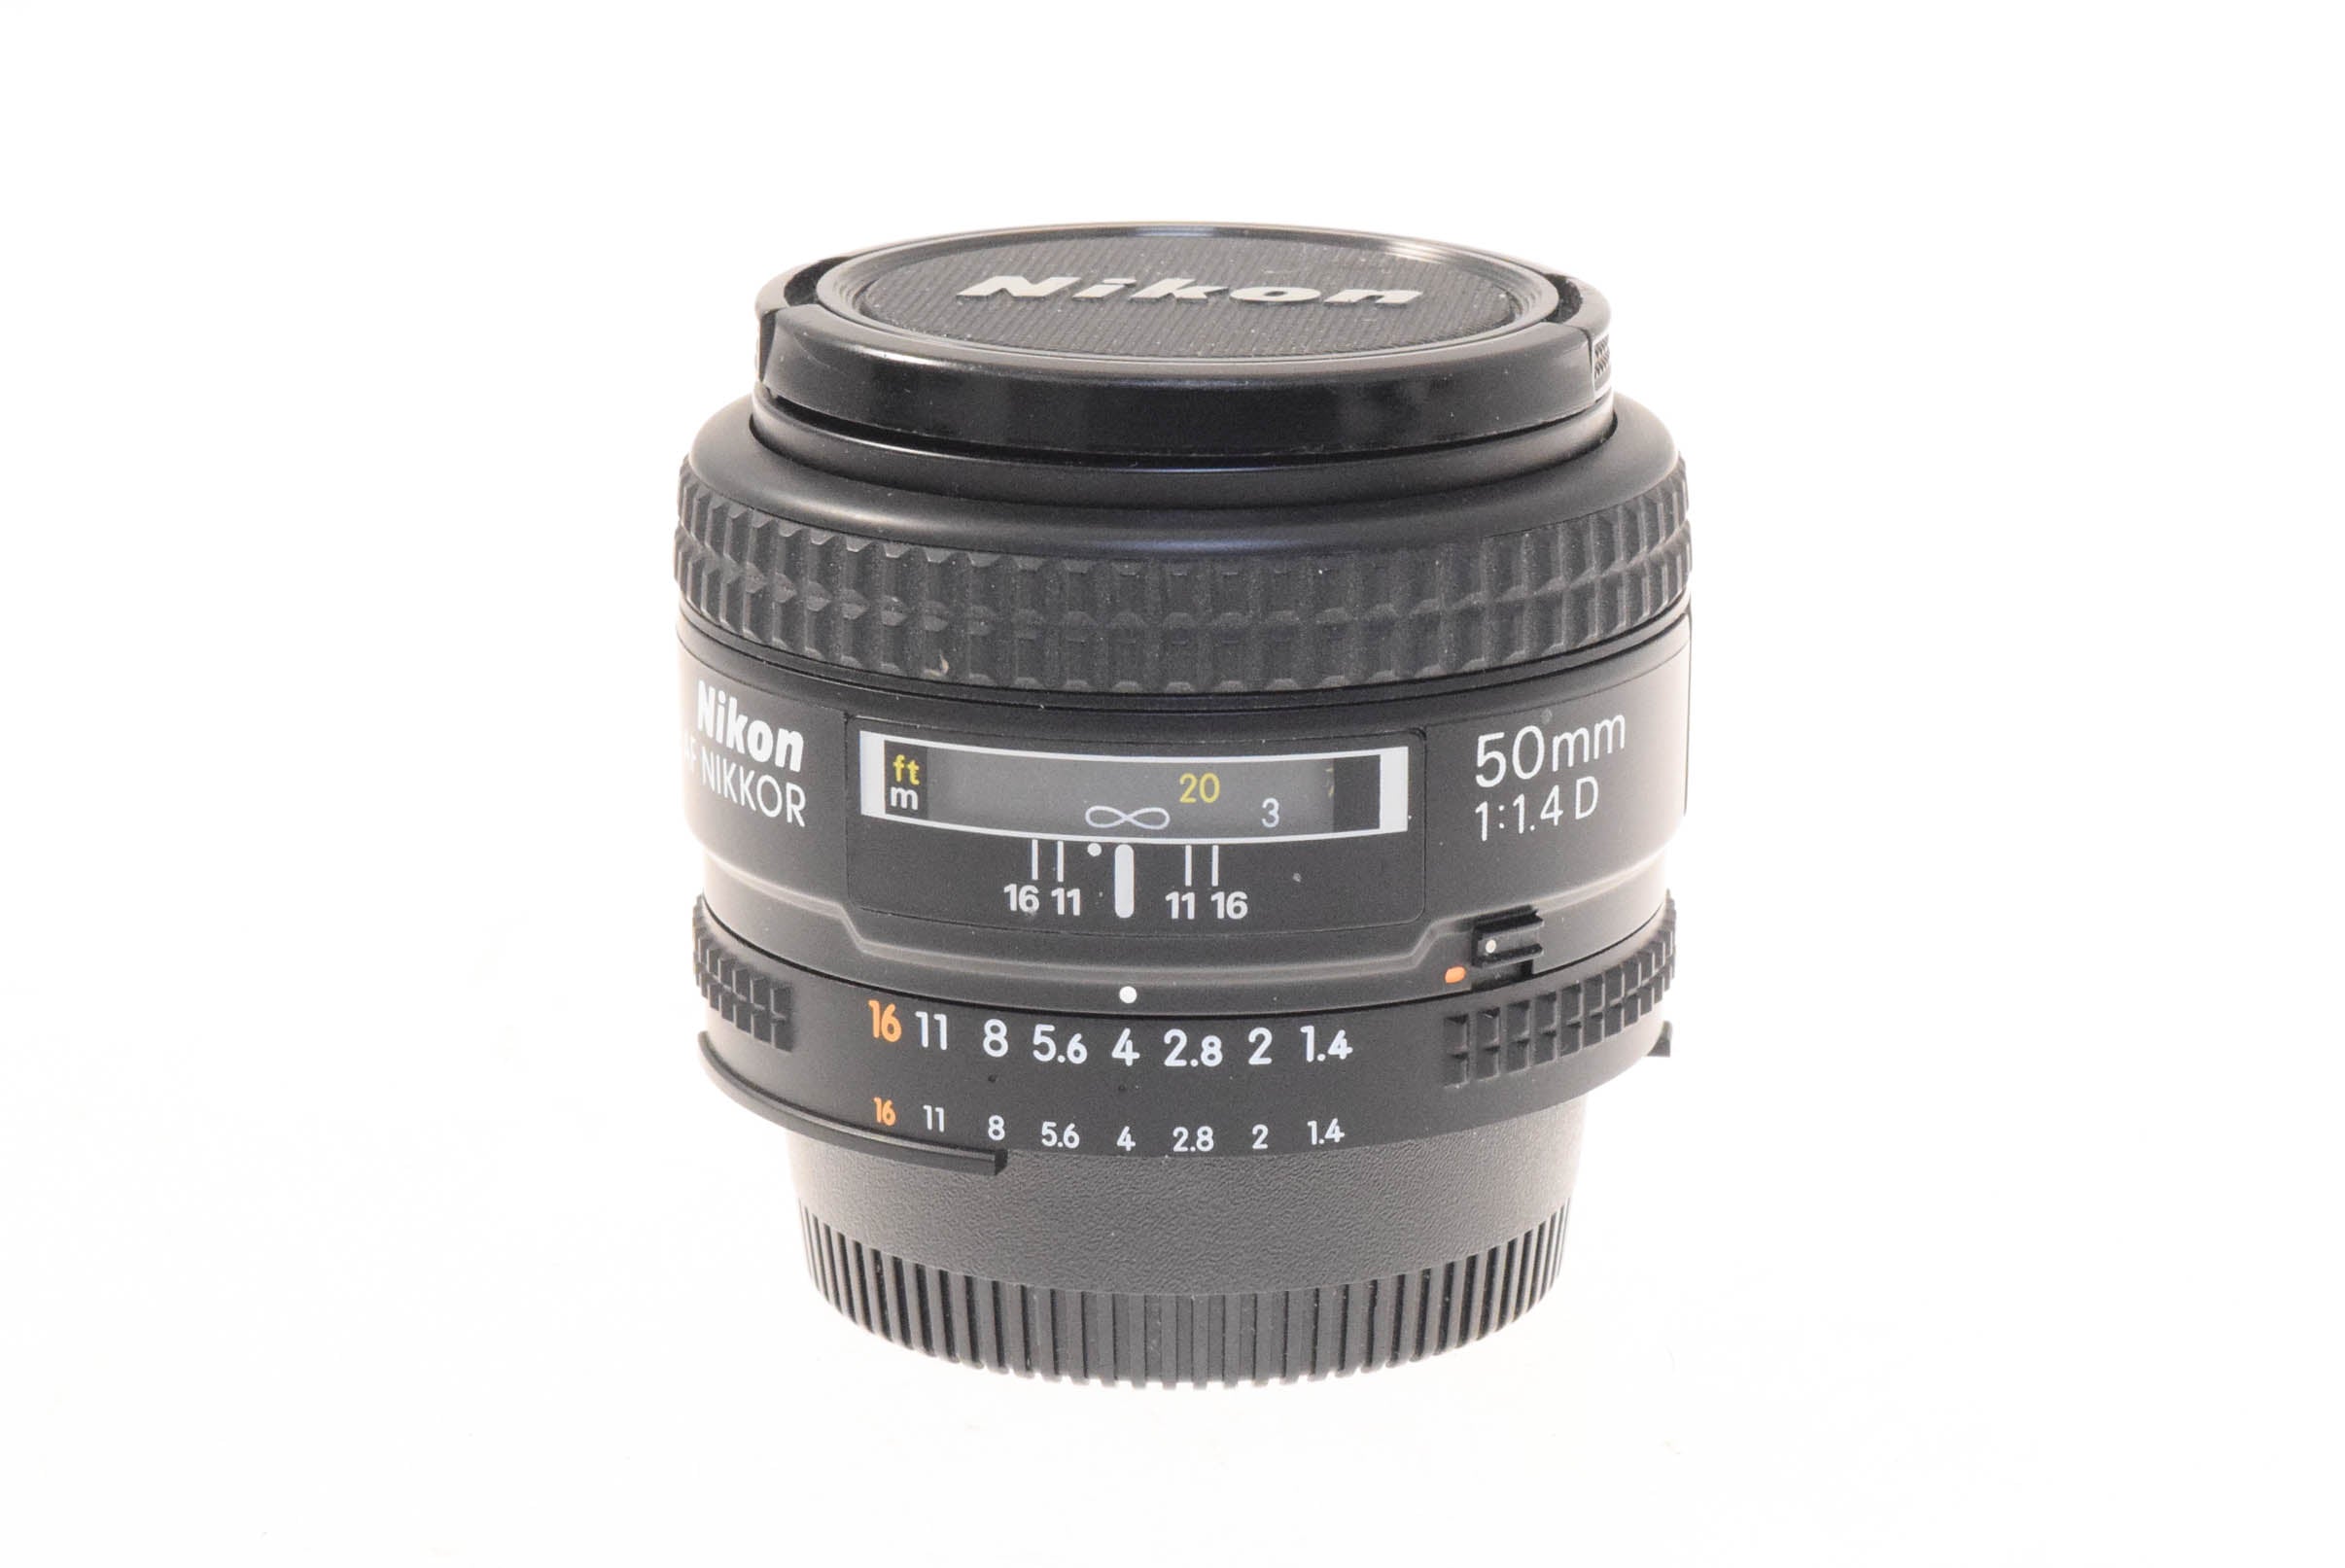 Nikon 50mm f1.4 D AF Nikkor - Lens